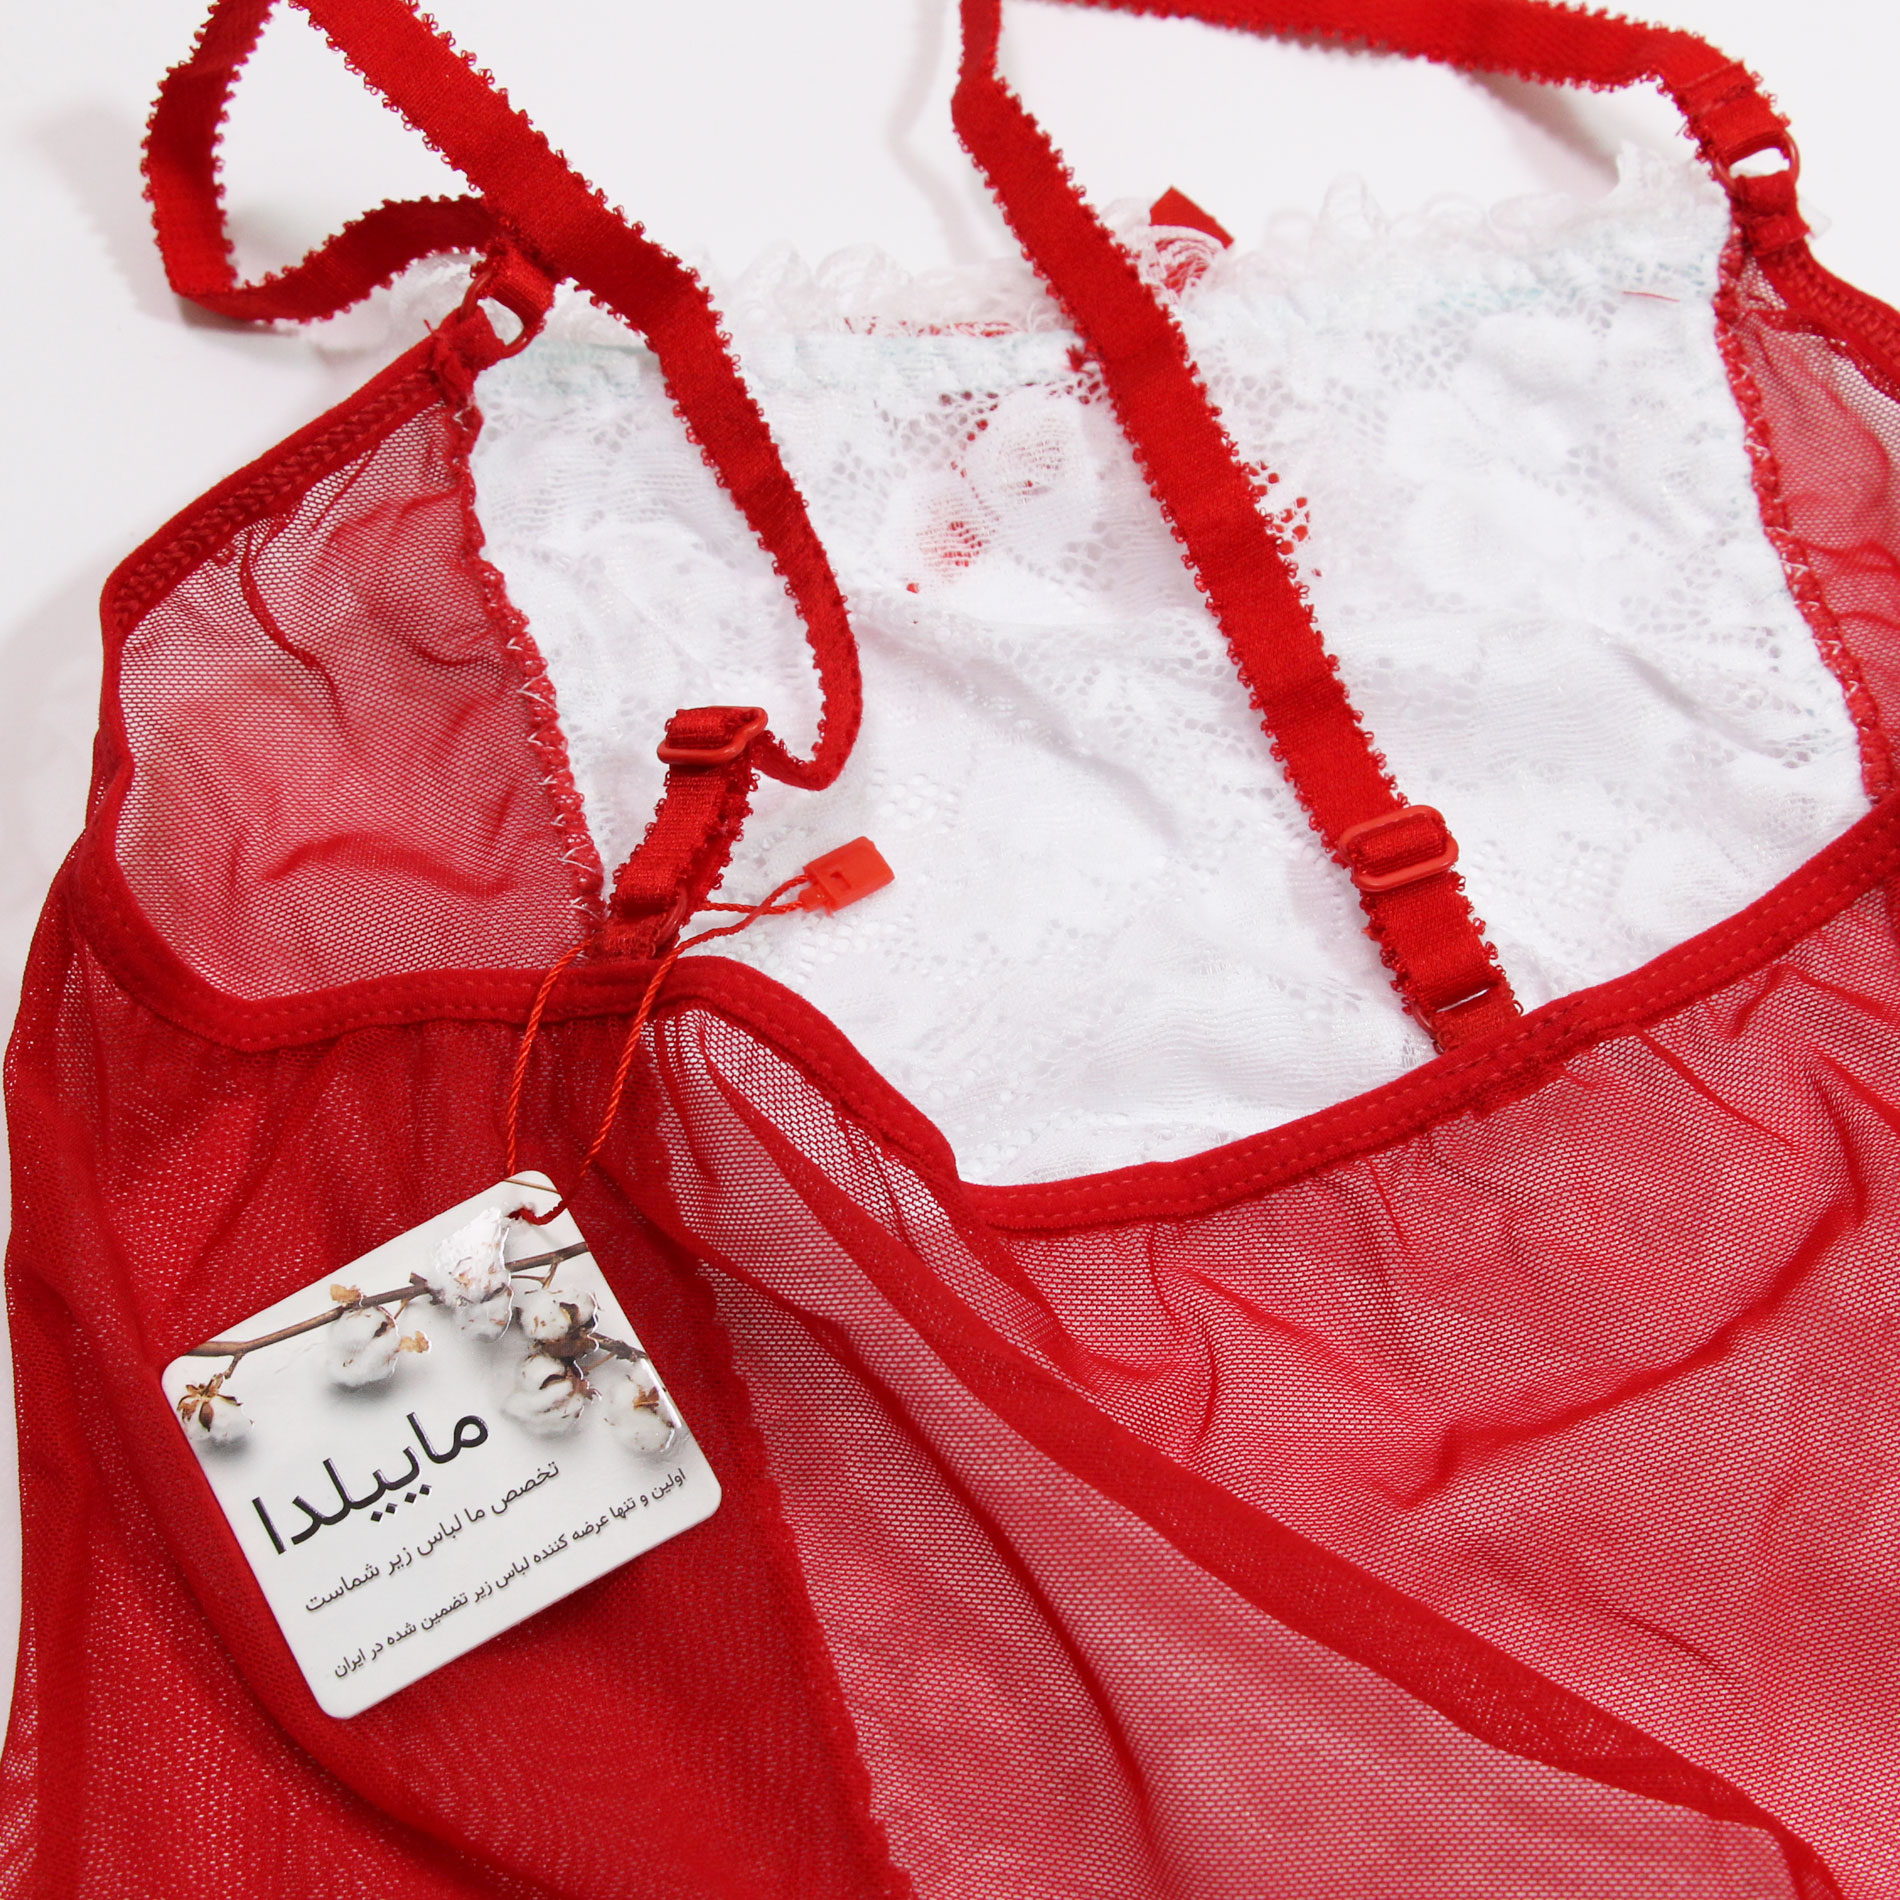 ست لباس خواب زنانه ماییلدا مدل فانتزی کد 3684-413 رنگ قرمز -  - 11